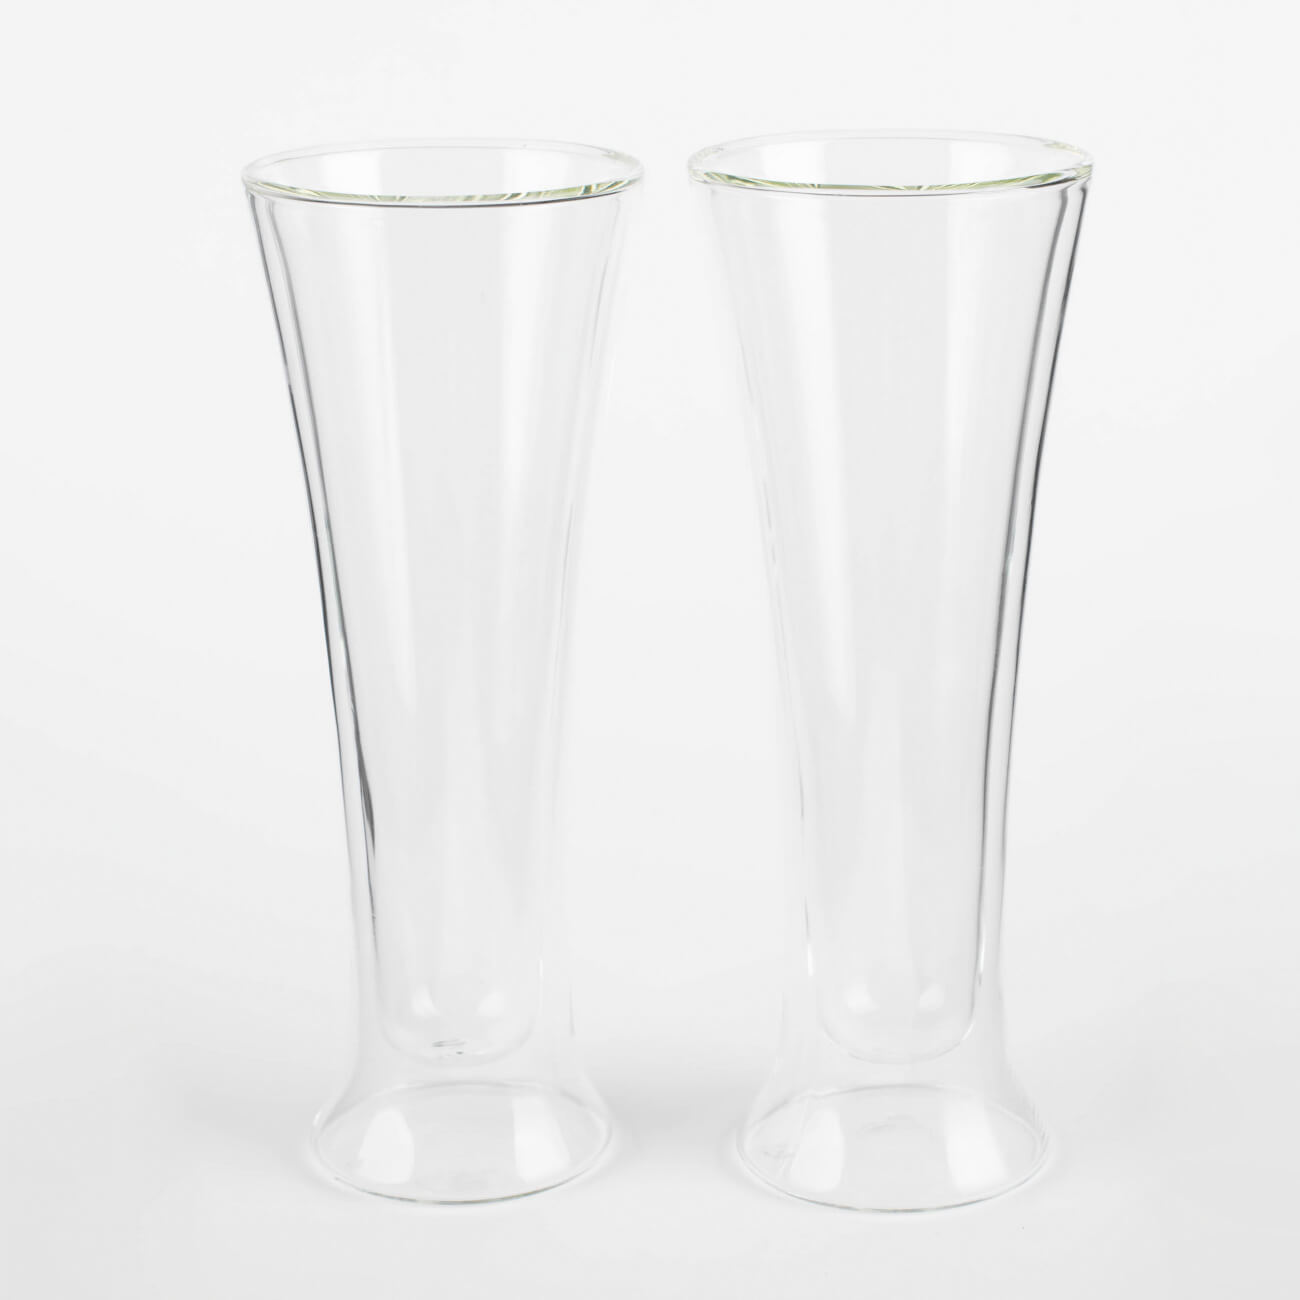 16490 fissman набор sencha из 2 х стаканов с двойными стенками 280мл жаропрочное стекло Стакан для пива, 320 мл, 2 шт, стекло Б, Air